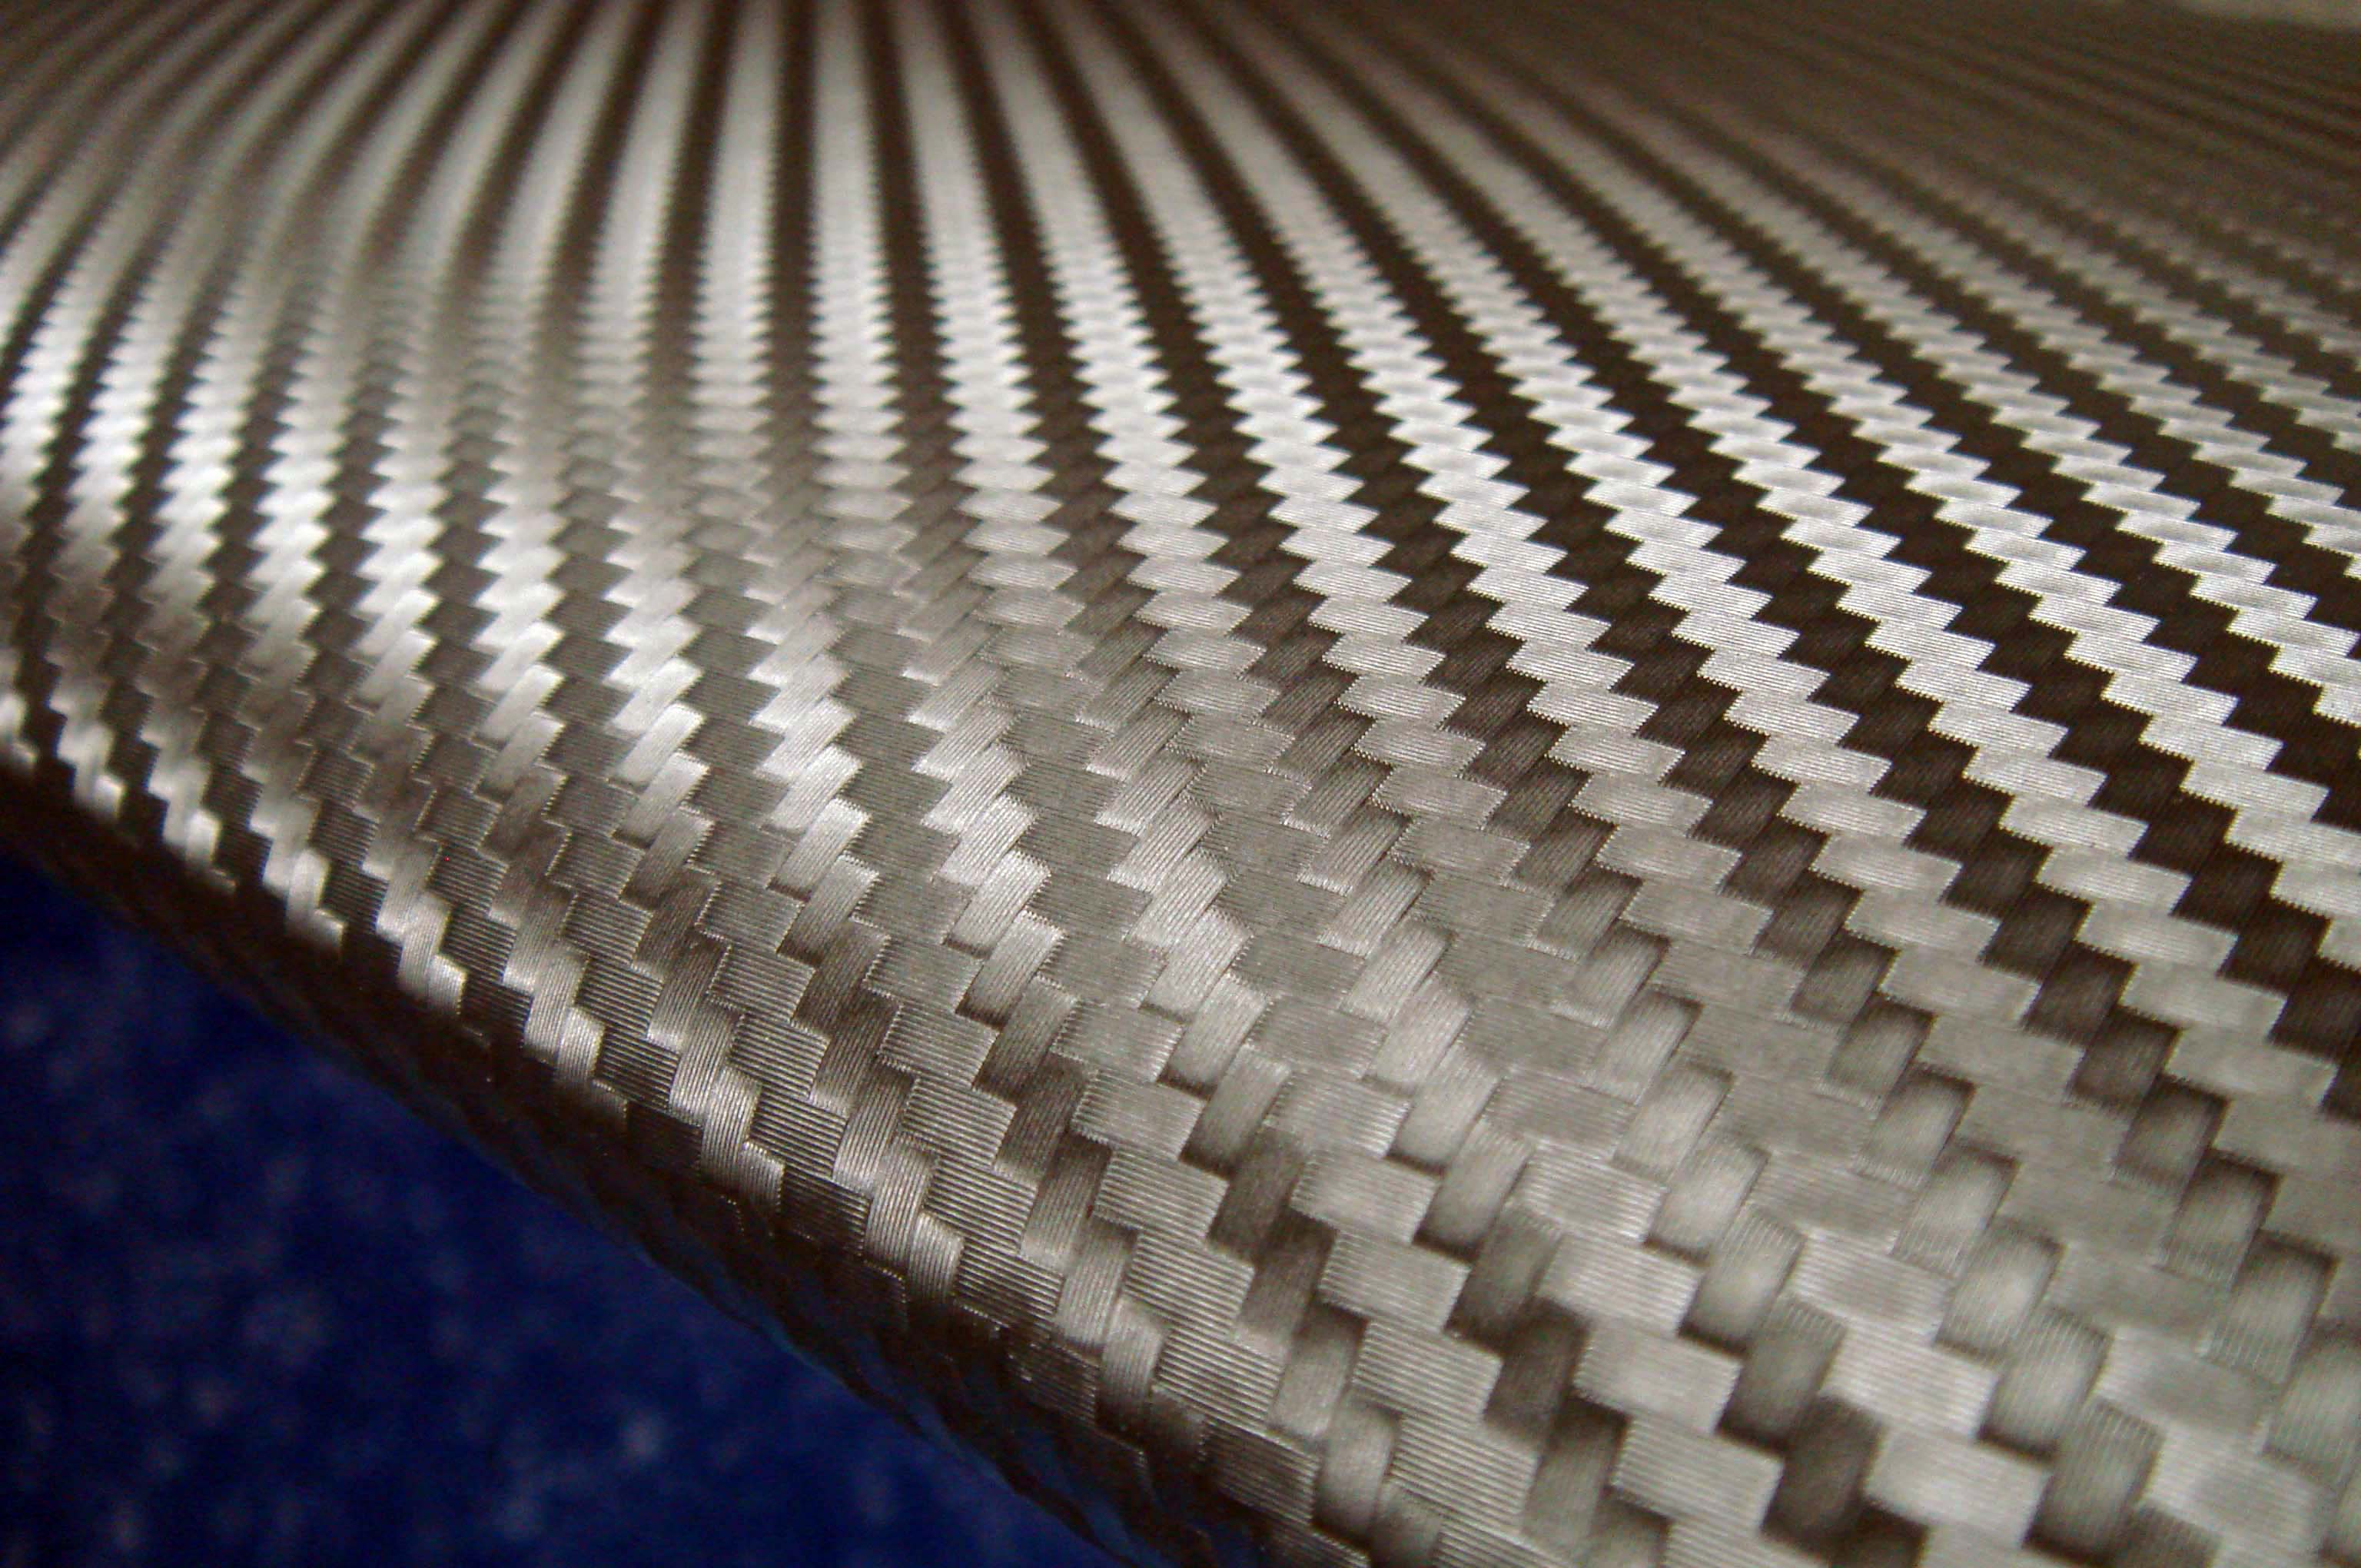 Carbon Fiber Texture Hd Image - Carbon Fiber - HD Wallpaper 